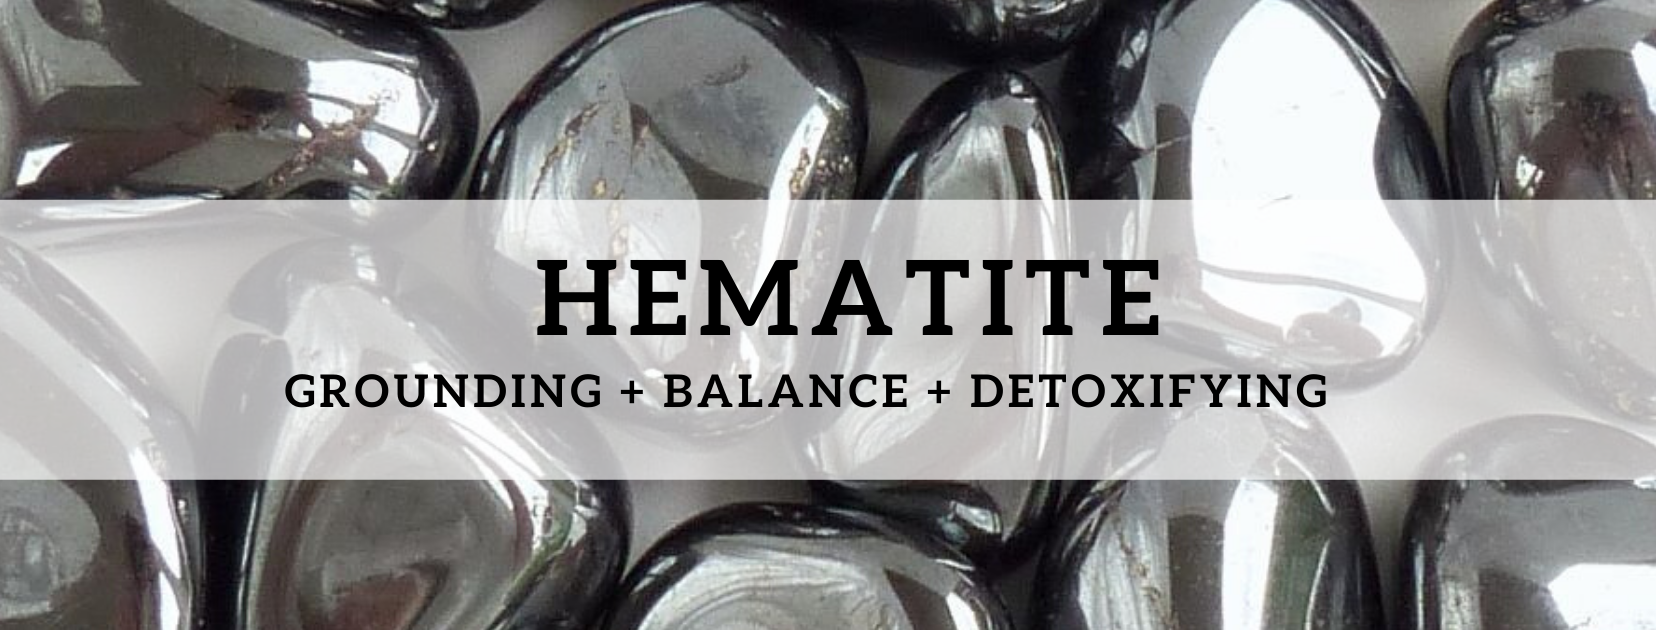 Propiedades curativas de la hematita | Hematites Significado | Beneficios de la hematita - Cristales Mágicos